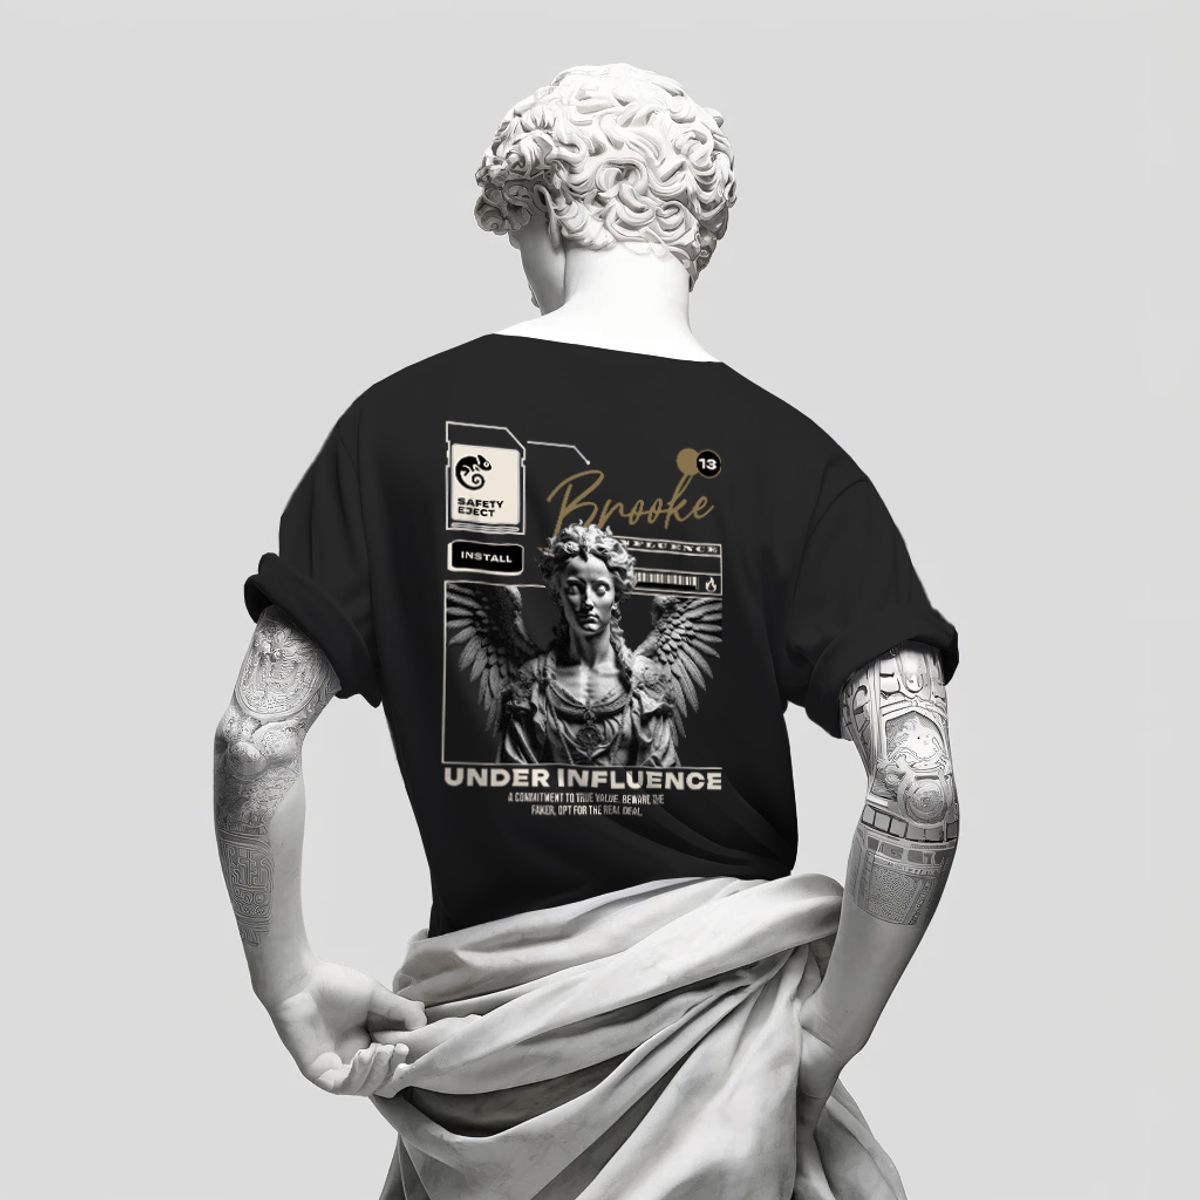 Nome do produto: Camiseta Prime Brooke Sculptural Collection Masculina